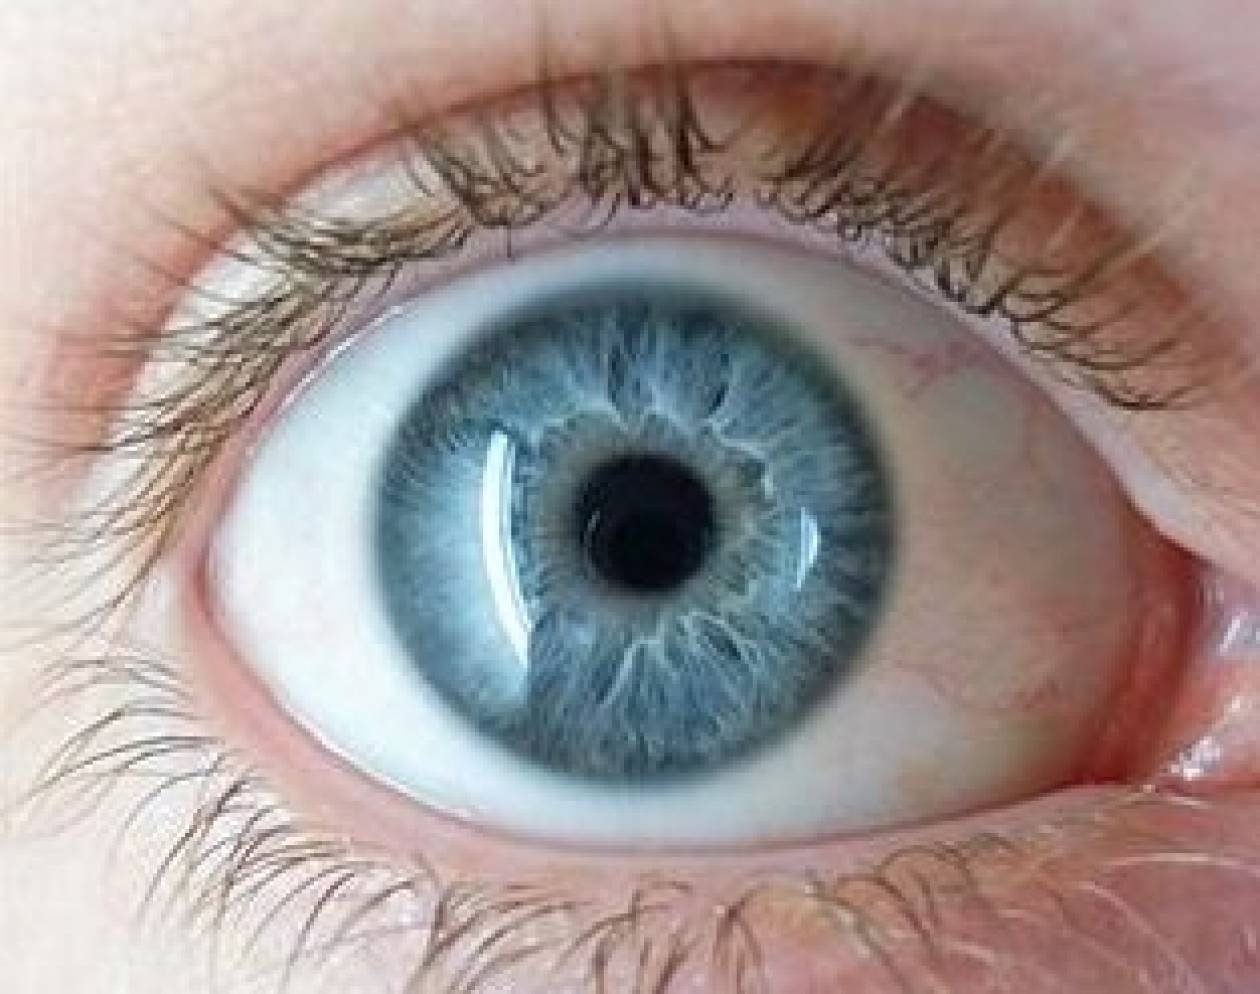 Τι σημαίνουν τα συμπτώματα στα μάτια